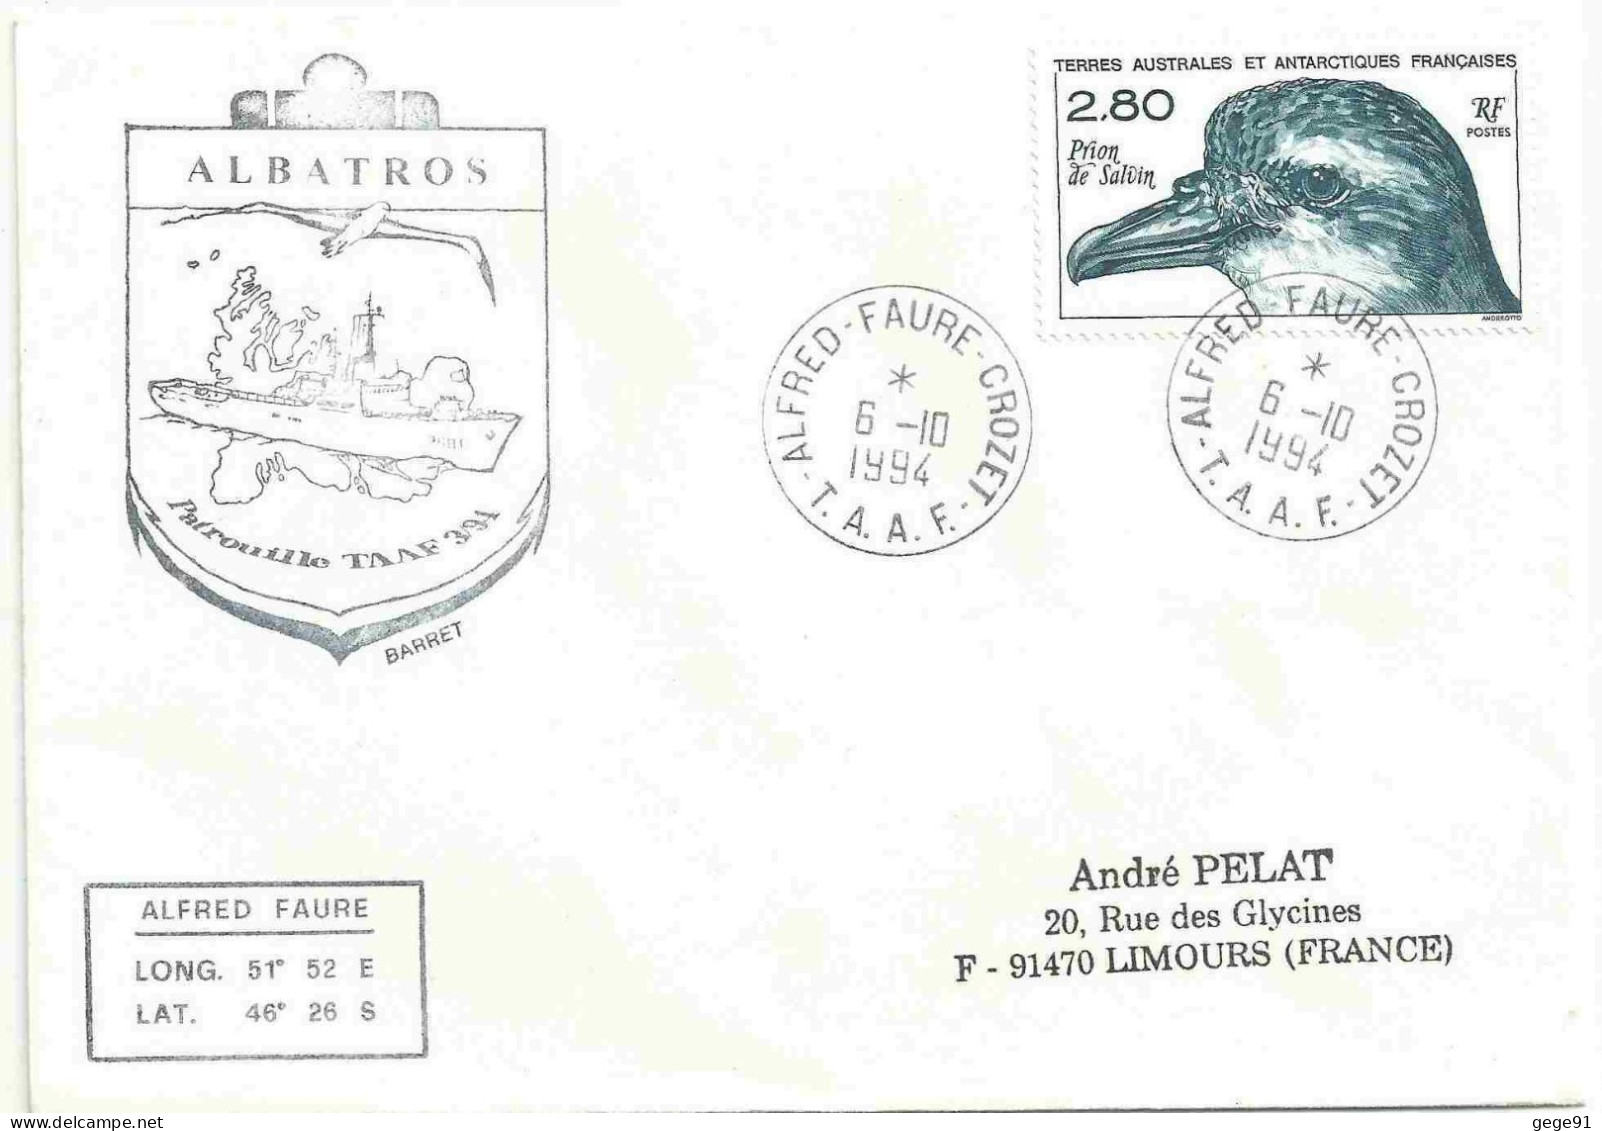 YT 189 Prion De Salvin - Posté à Bord De L'Albatros - Alfred Faure - Crozet - 06/10/1994 - Briefe U. Dokumente